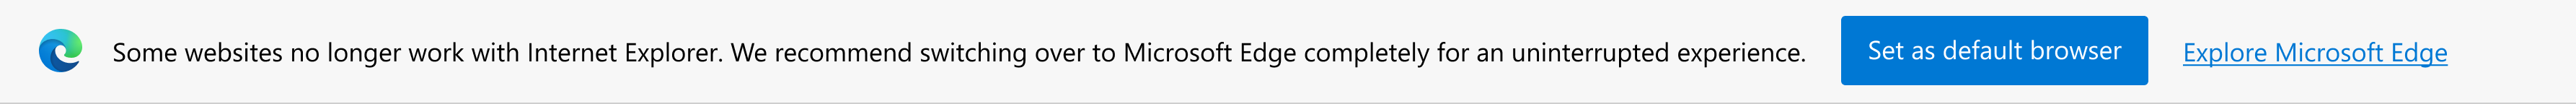 Уведомление о современных сайтах и предложение установить Microsoft Edge в качестве браузера, используемого по умолчанию, или ознакомиться с Microsoft Edge.